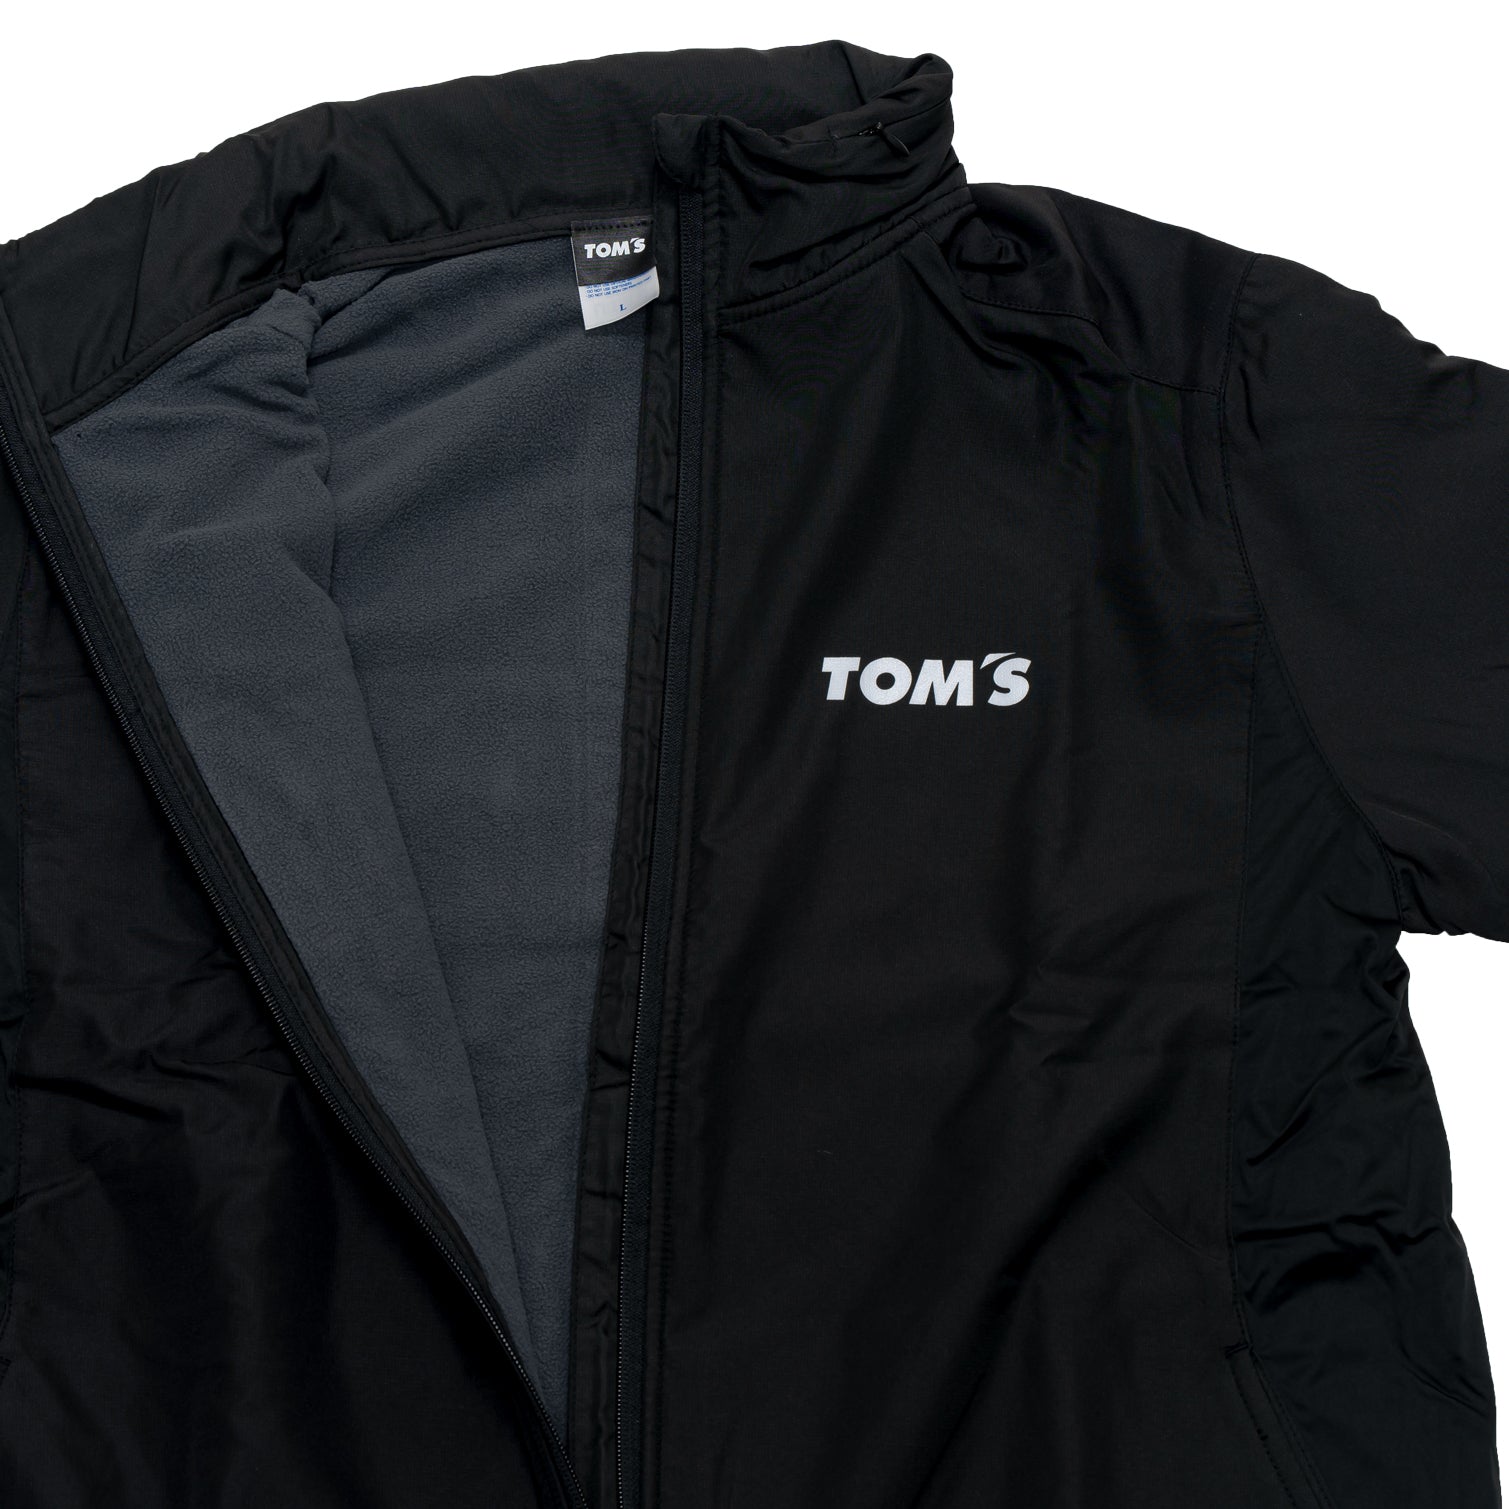 TOM'S Racing - Fleece Zip Jacket